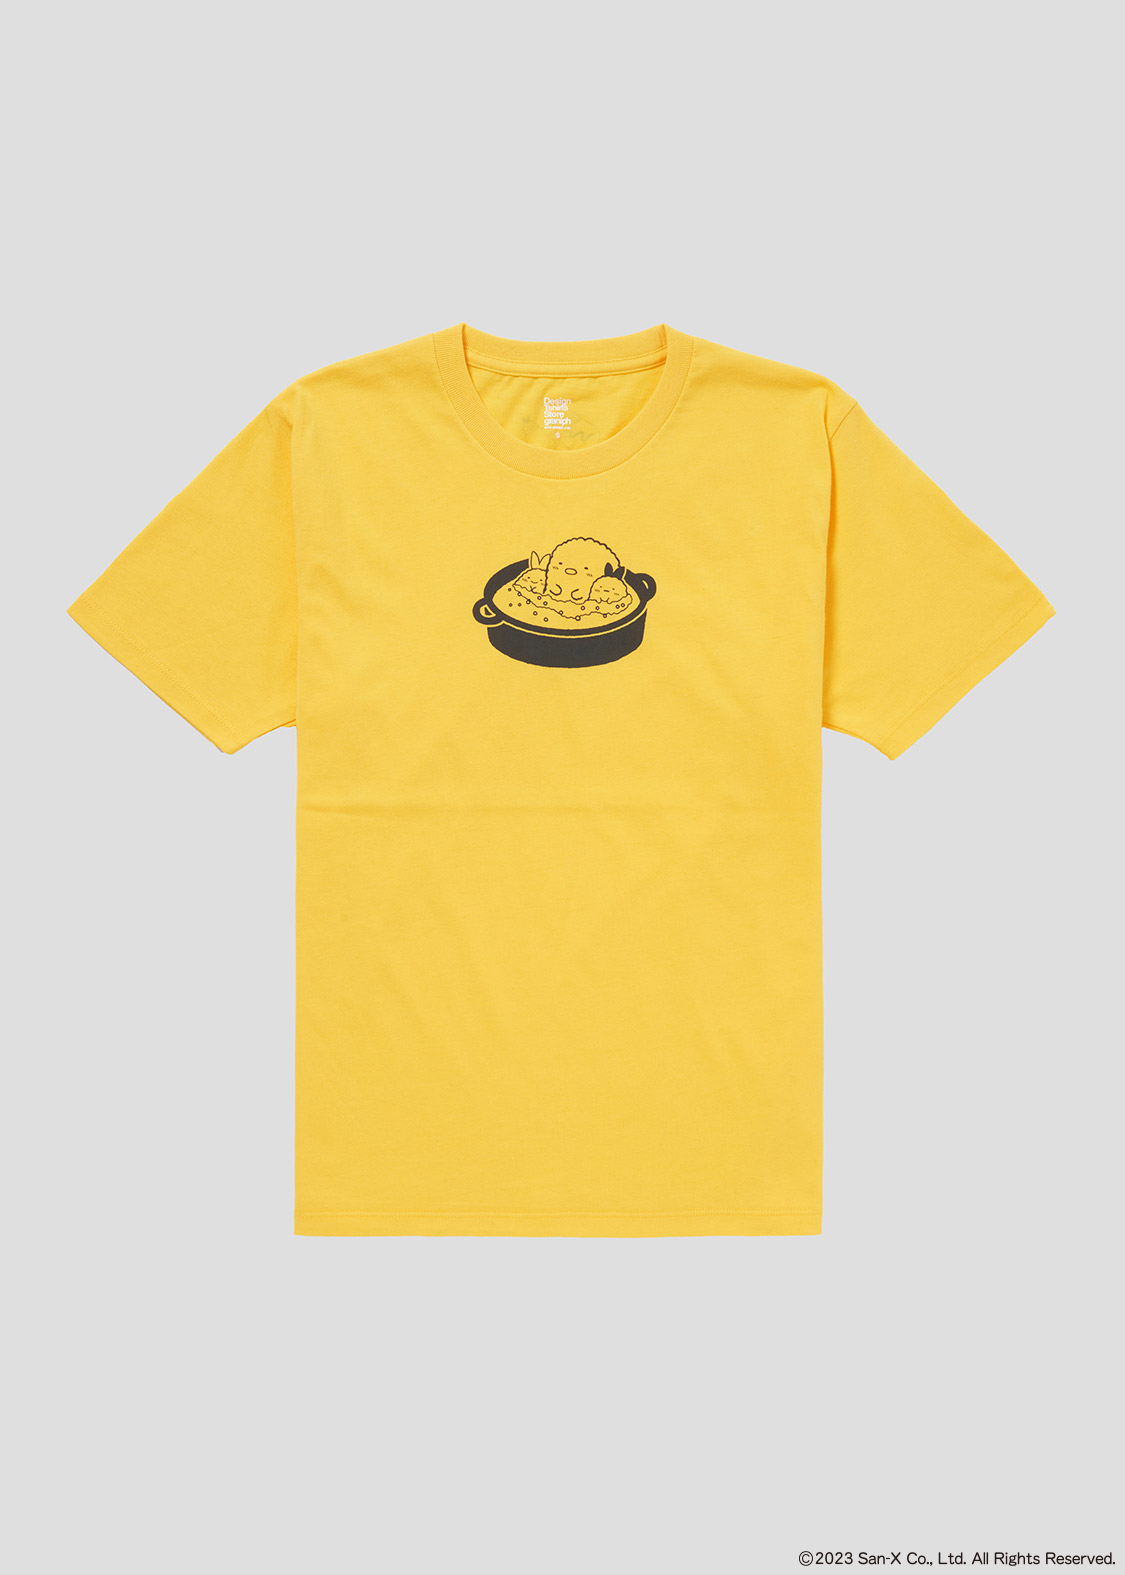 Tシャツ「アゲアゲあげっコ」Yellow（イエロー）